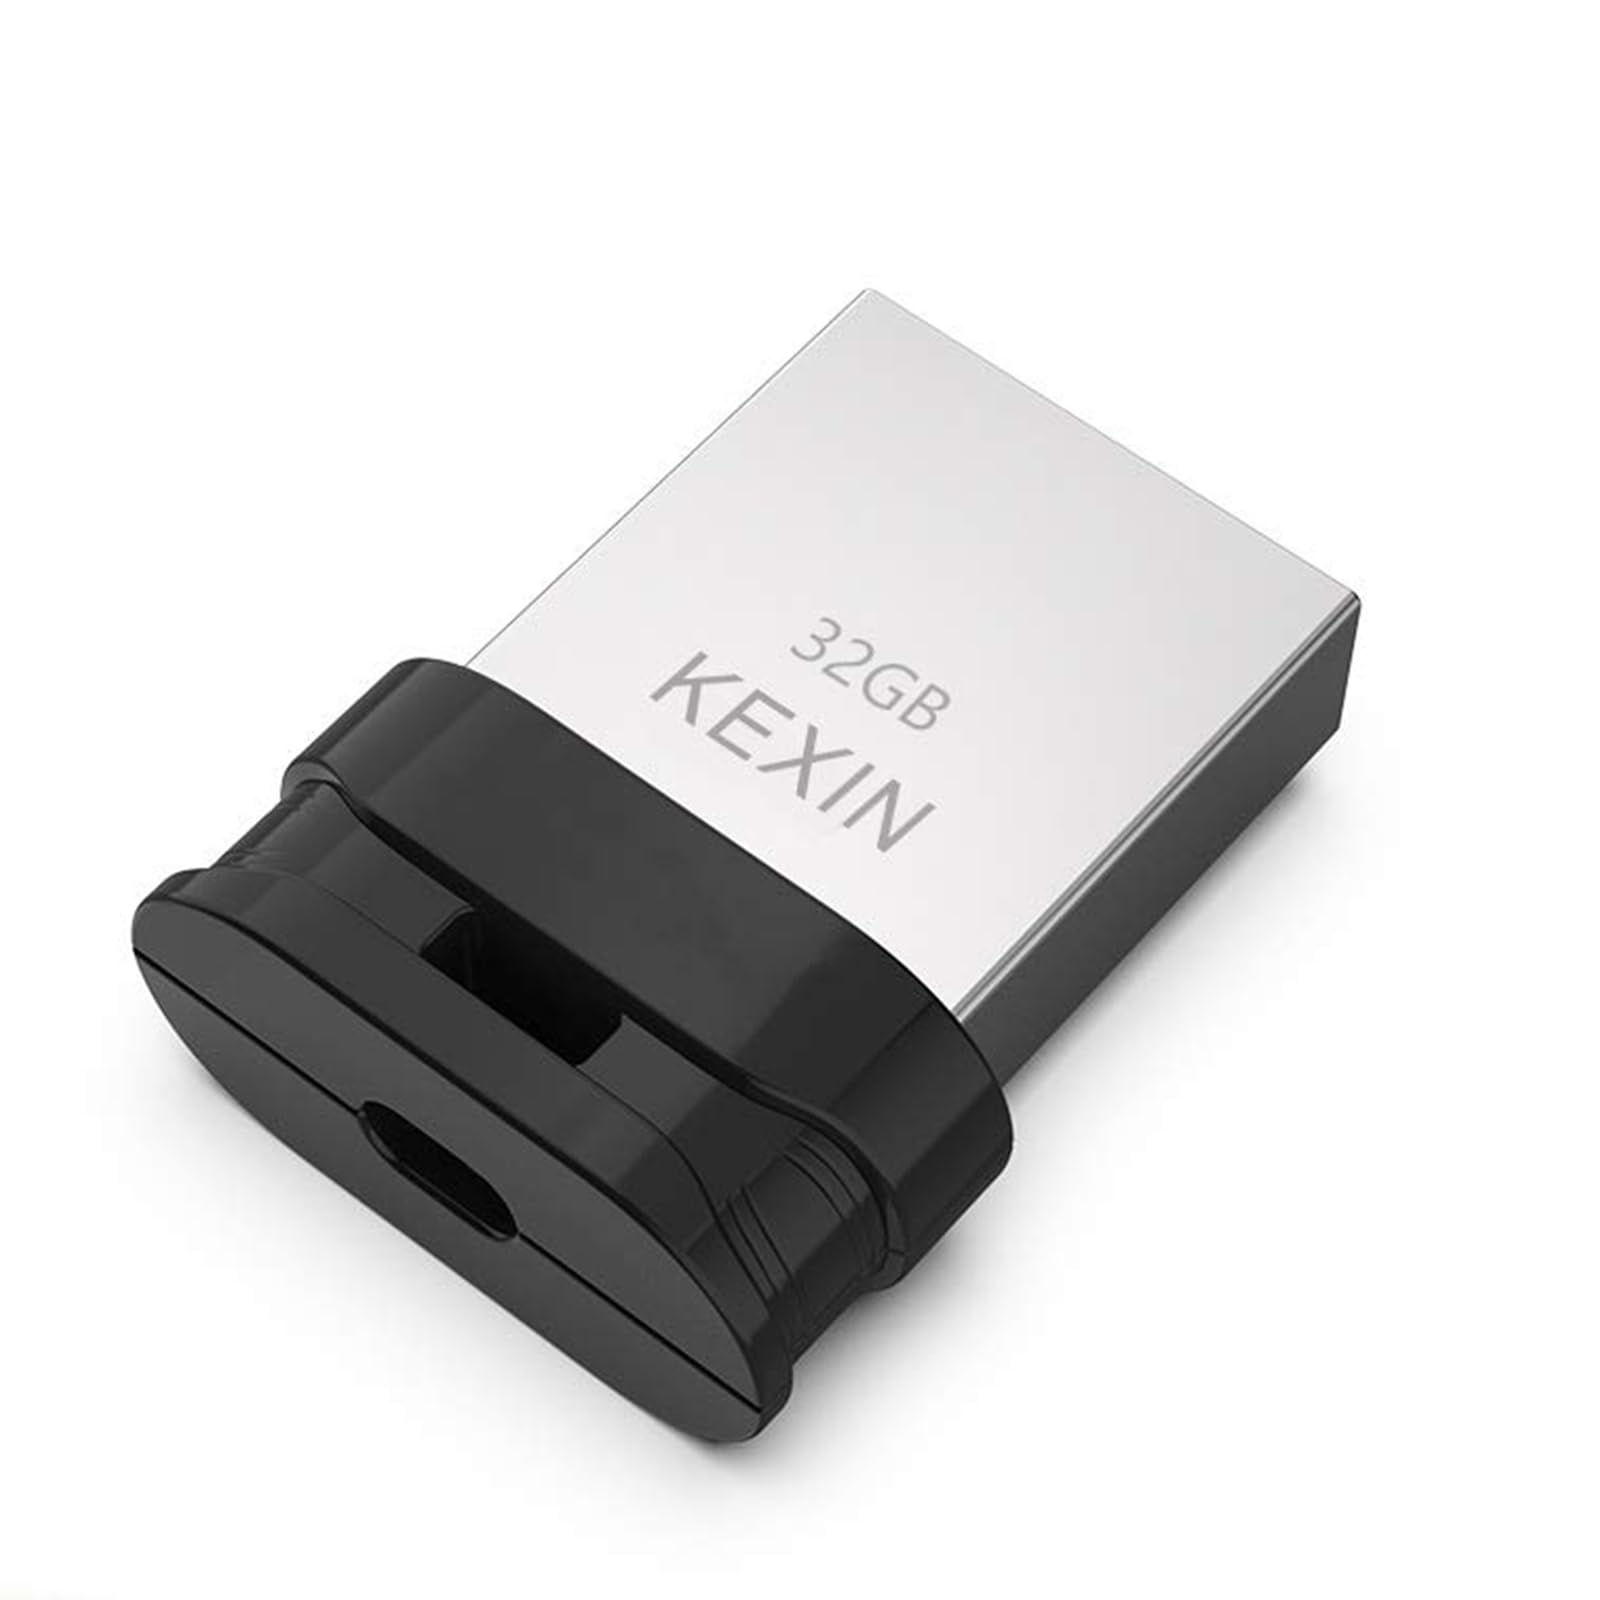 KEXIN USBメモリ・フラッシュドライブ